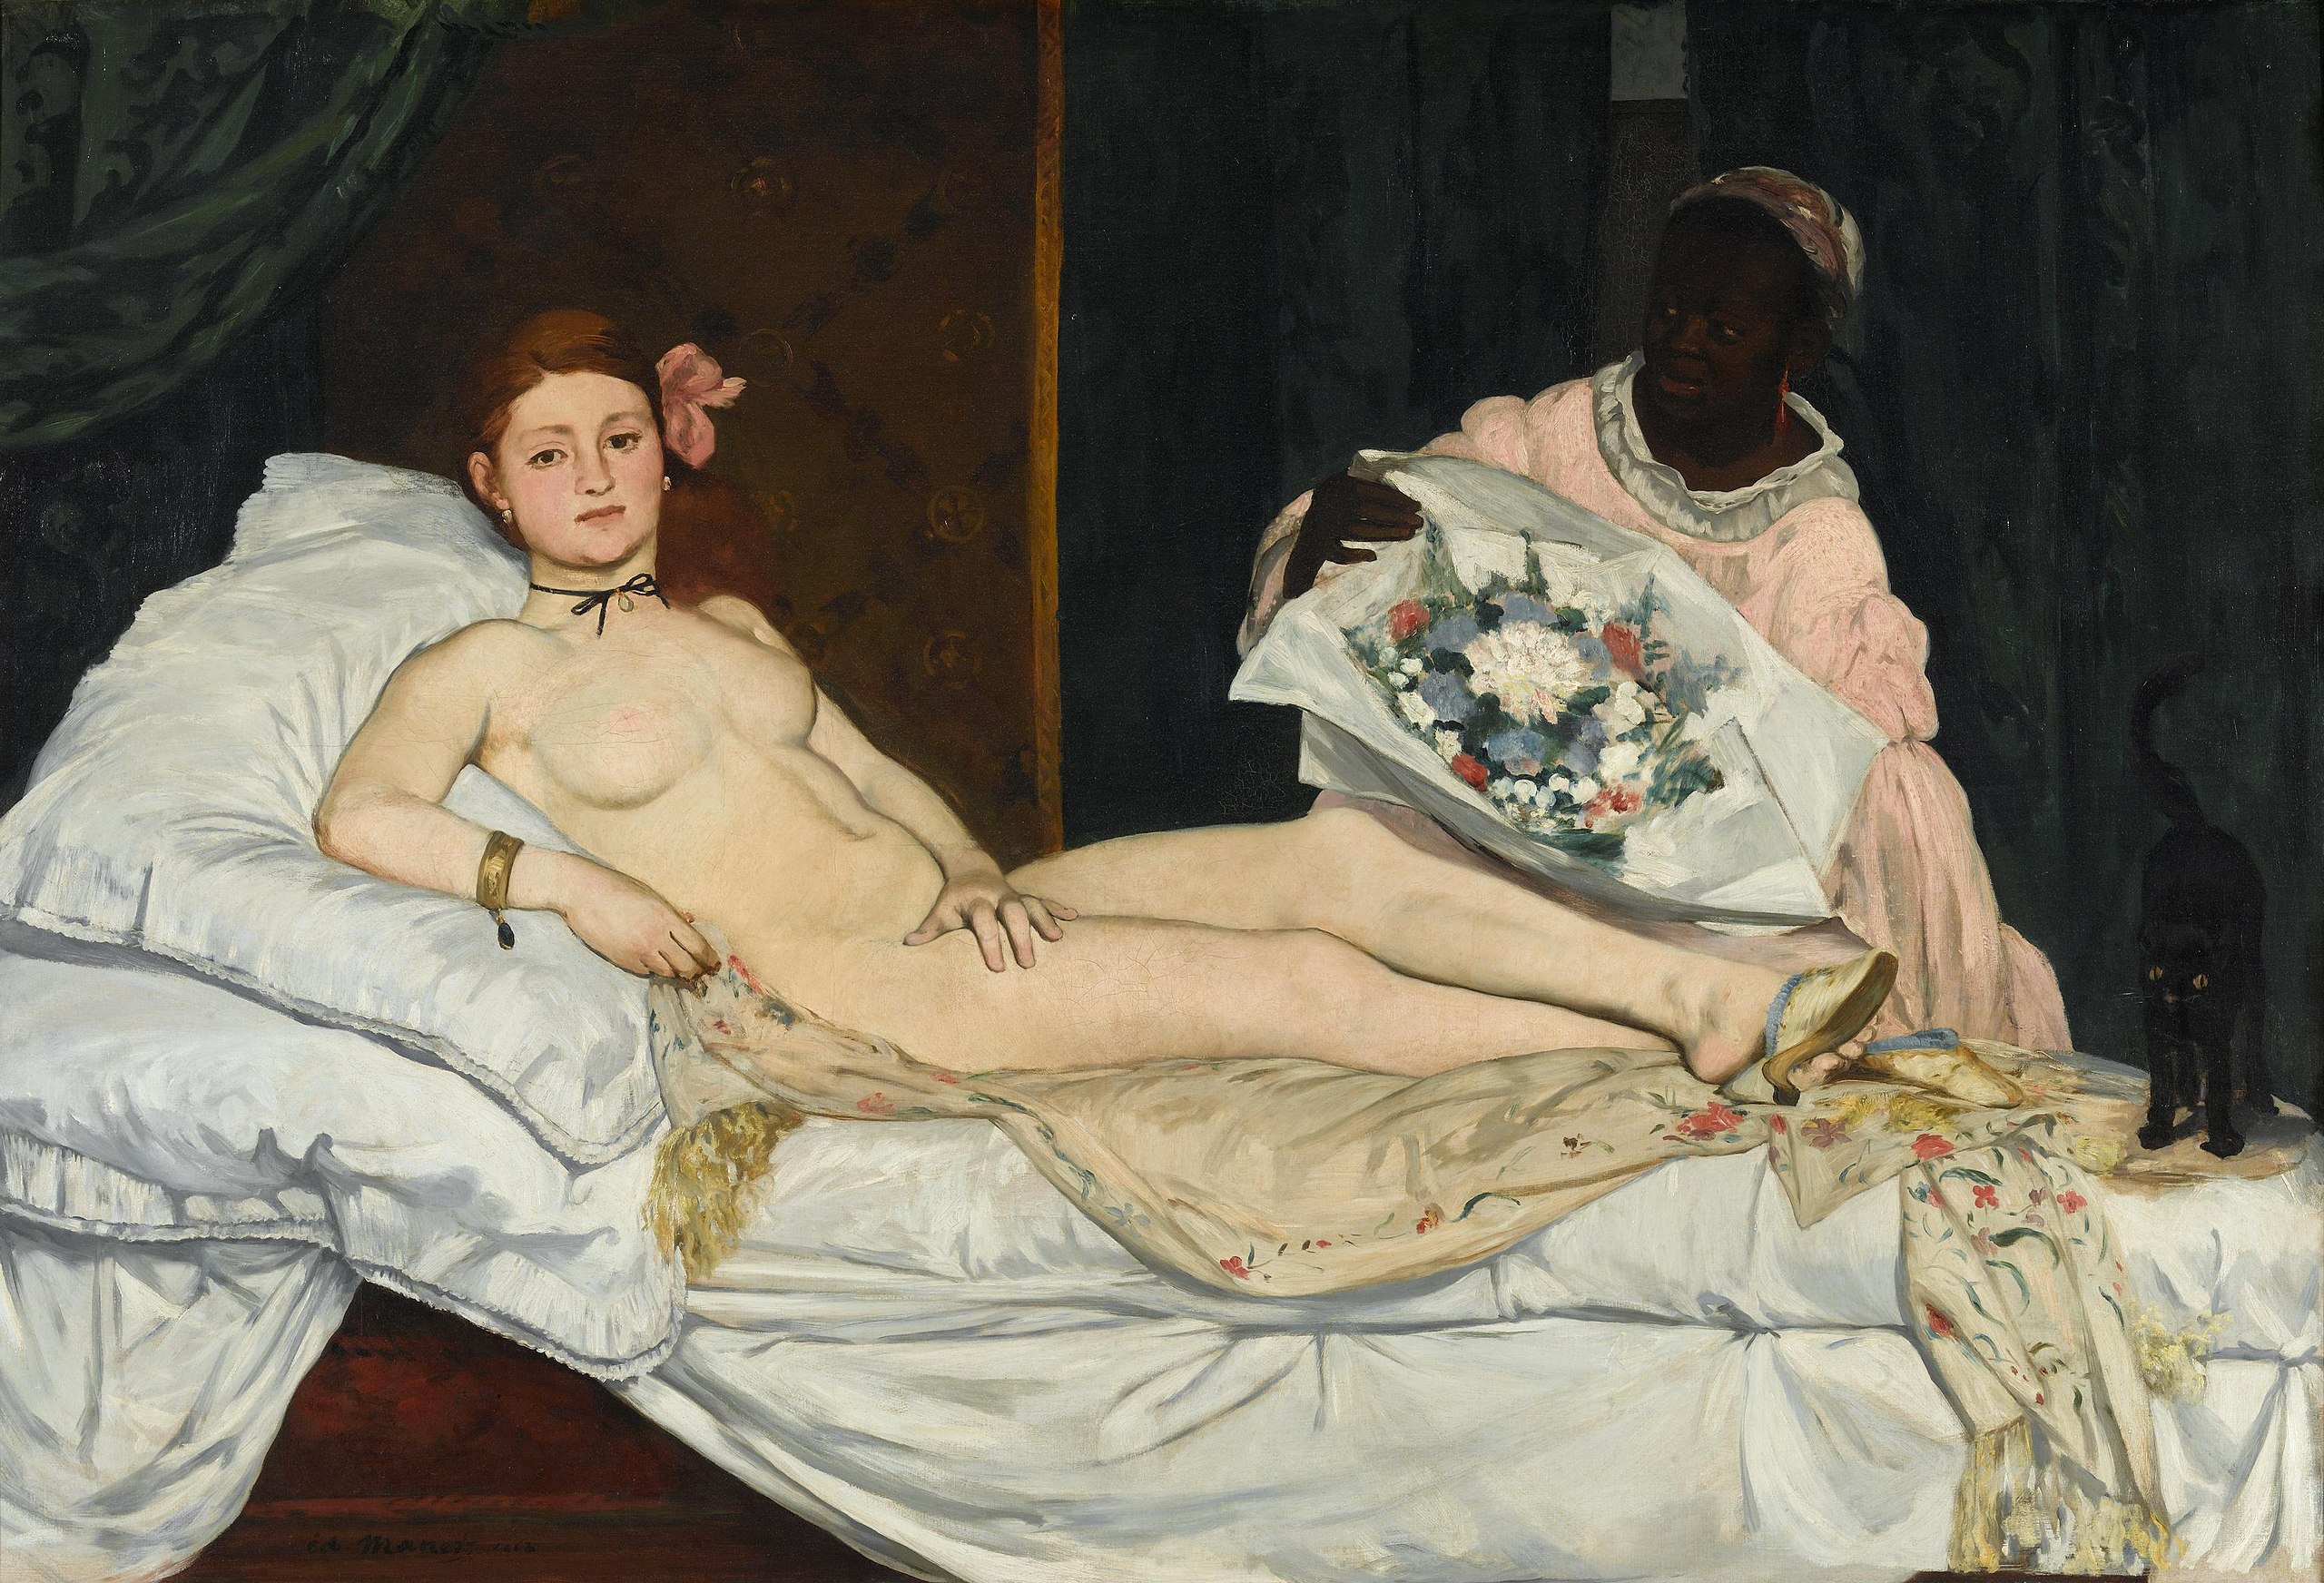 المپیا by Édouard Manet - 1863 - 190 x 130 cm 